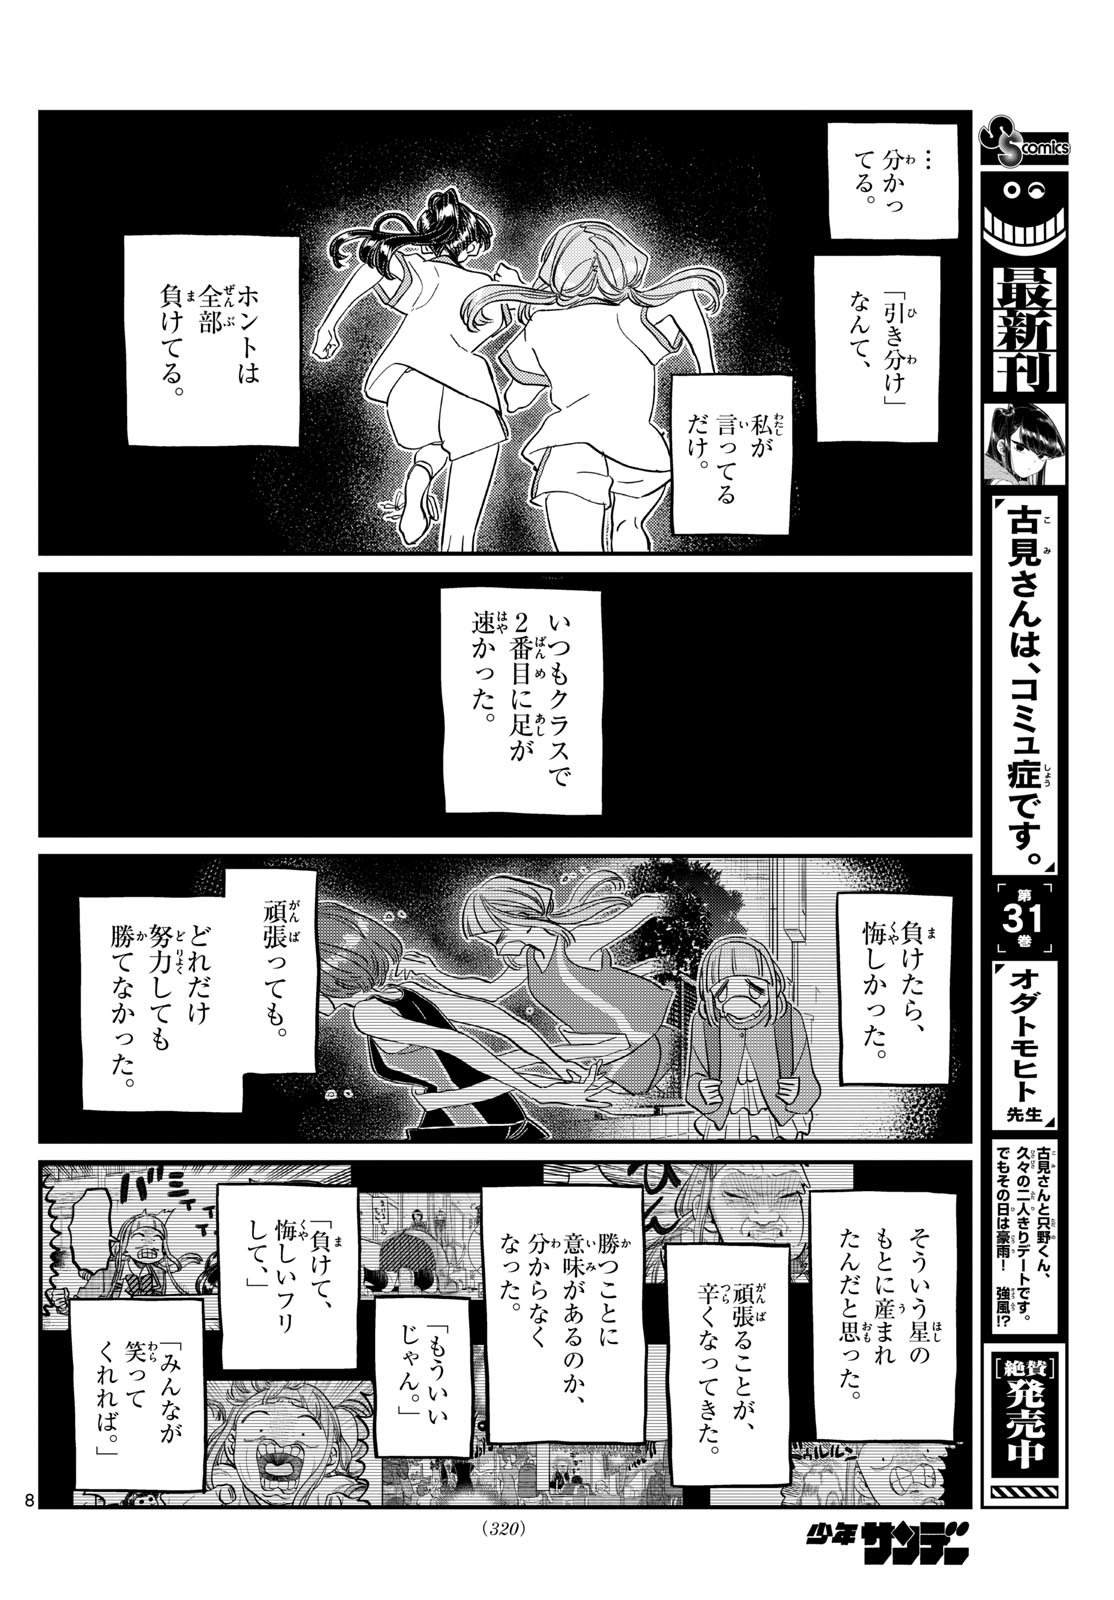 Komi-san wa Komyushou Desu - Chapter 431 - Page 8